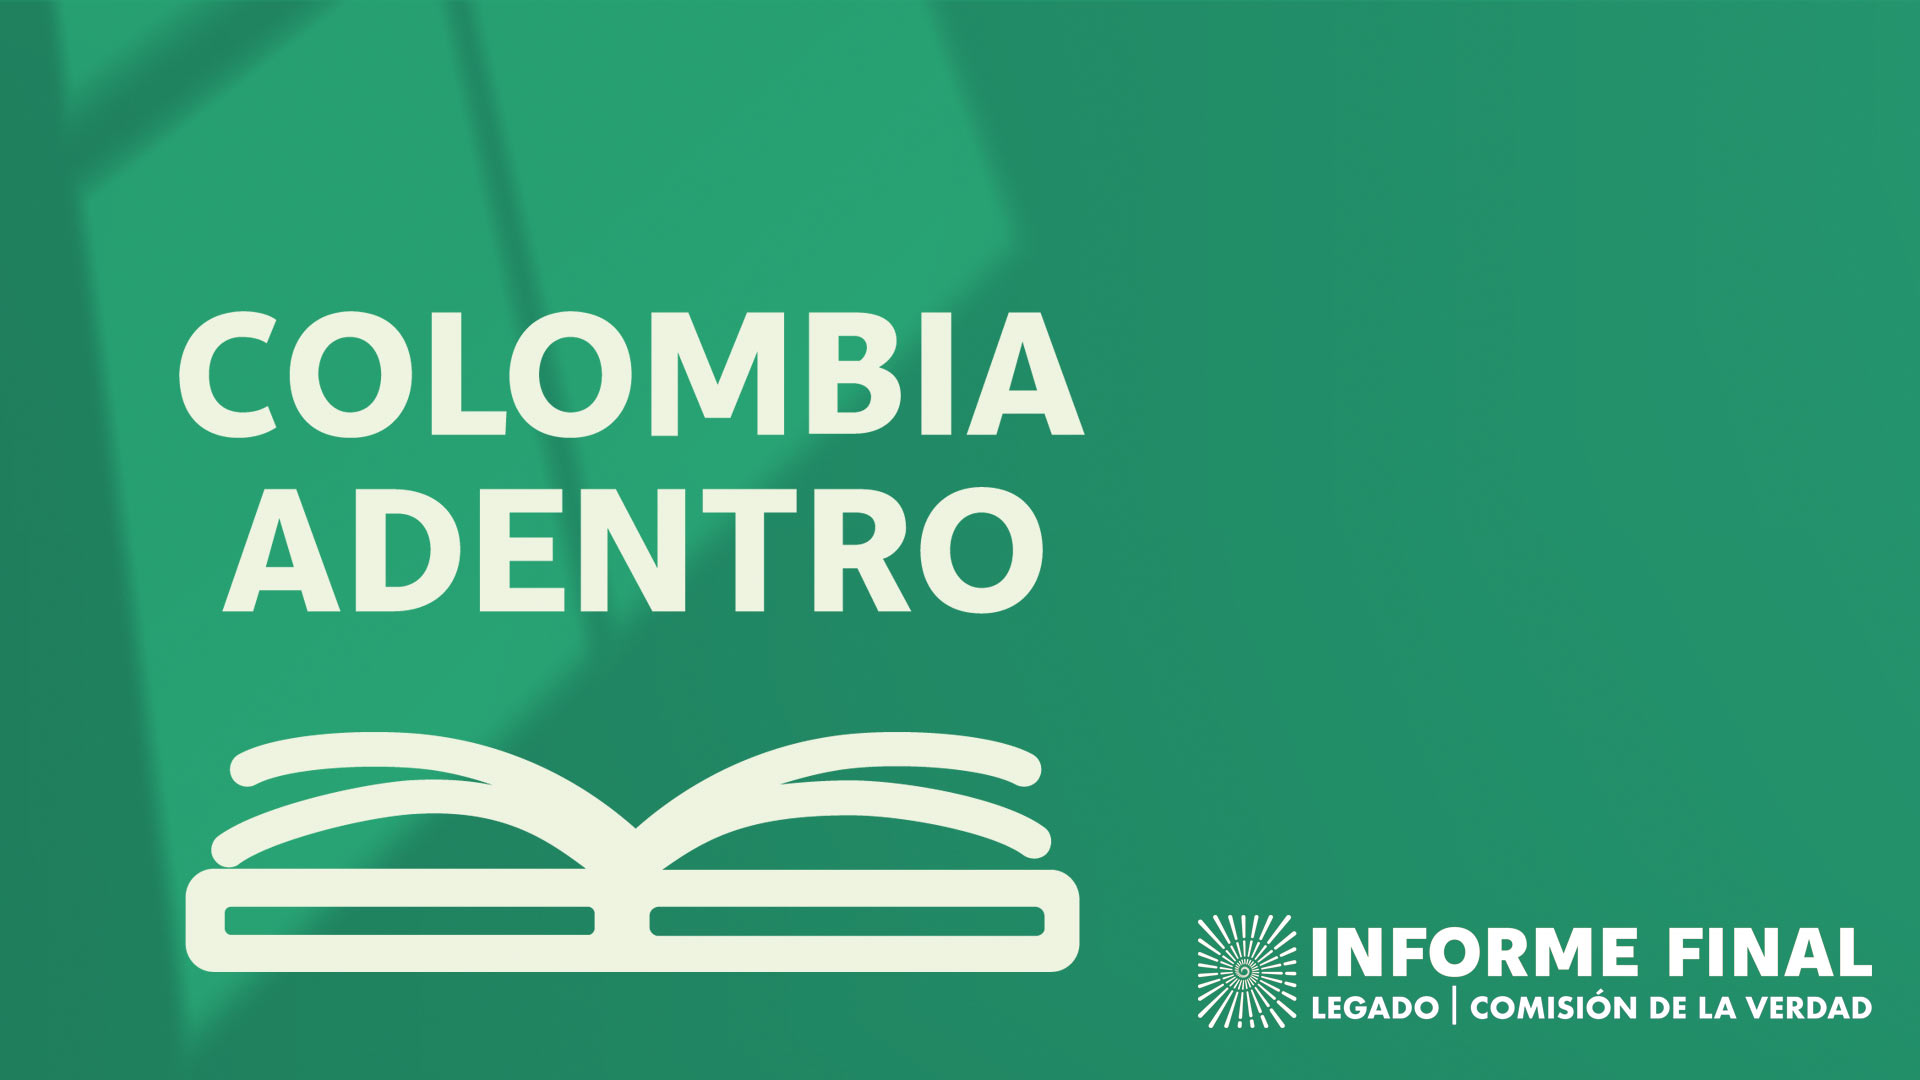 fondo verde con sombra de ventana, ícono de libro con el texto Colombia adentro